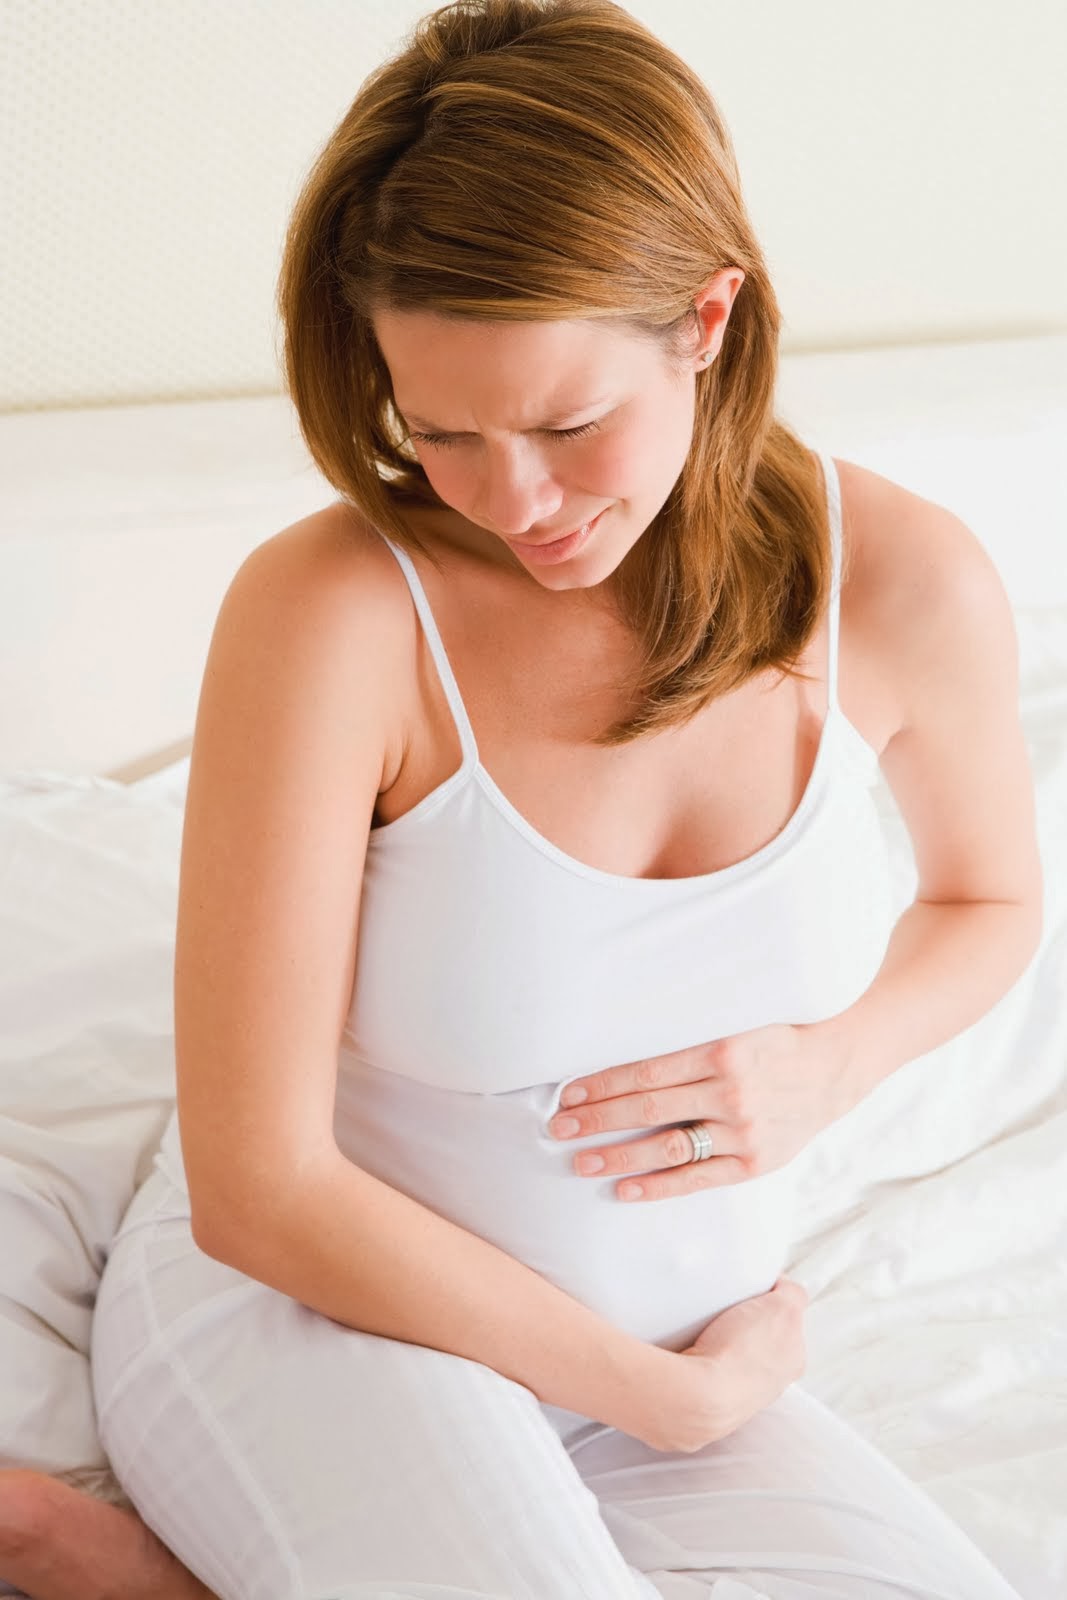 obat diare untuk ibu hamil | diare pada ibu hamil | obat diare